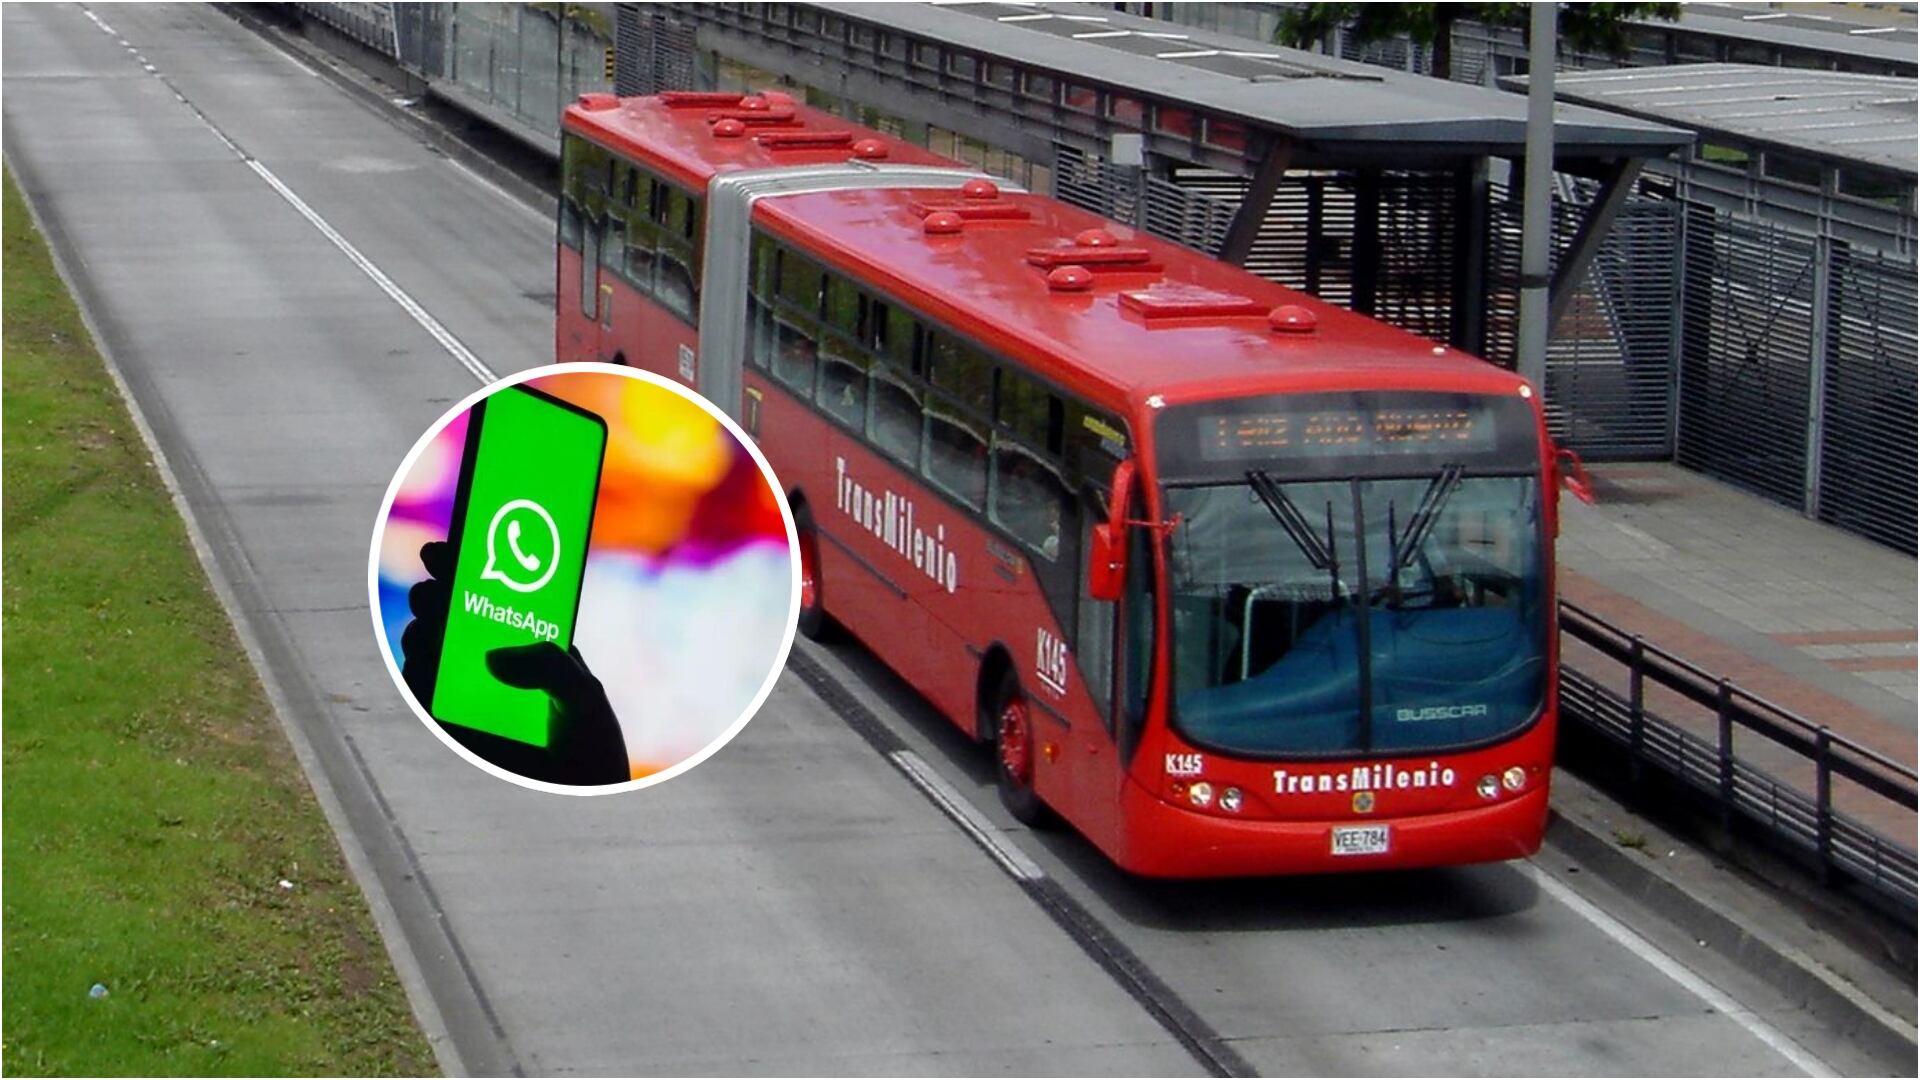 Usuarios de TransMilenio ahora pueden unirse al canal de WhatsApp del sistema de transporte, descubra cómo hacerlo (TransMilenio y logo de WhatsApp)